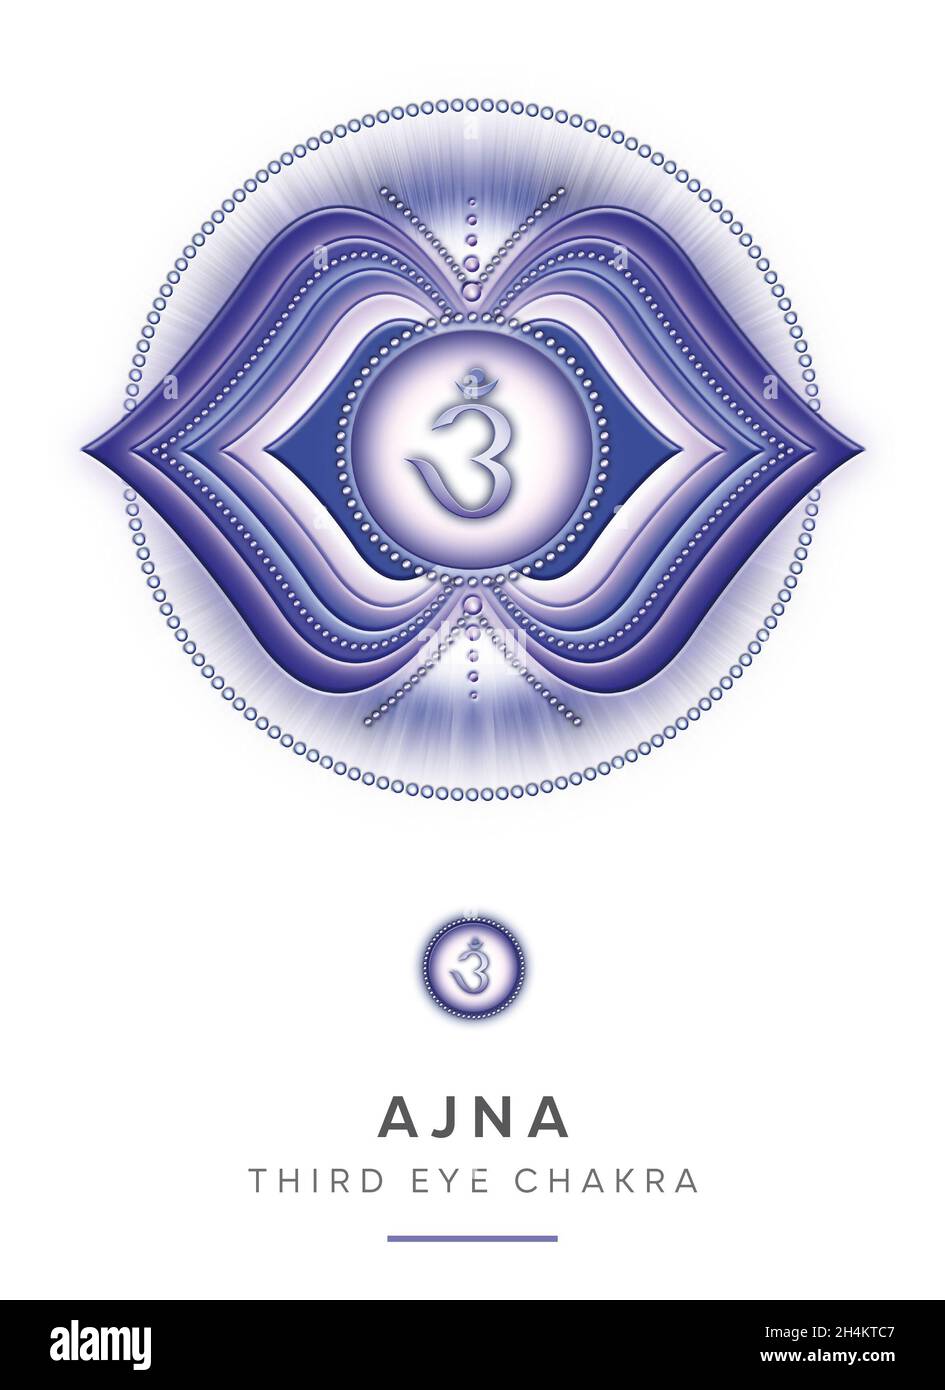 Chakra Symbols, Third Eye Chakra - AJNA - Intuition, Lucidity, Meditation, Trust - 'I SEE' Stock Photo